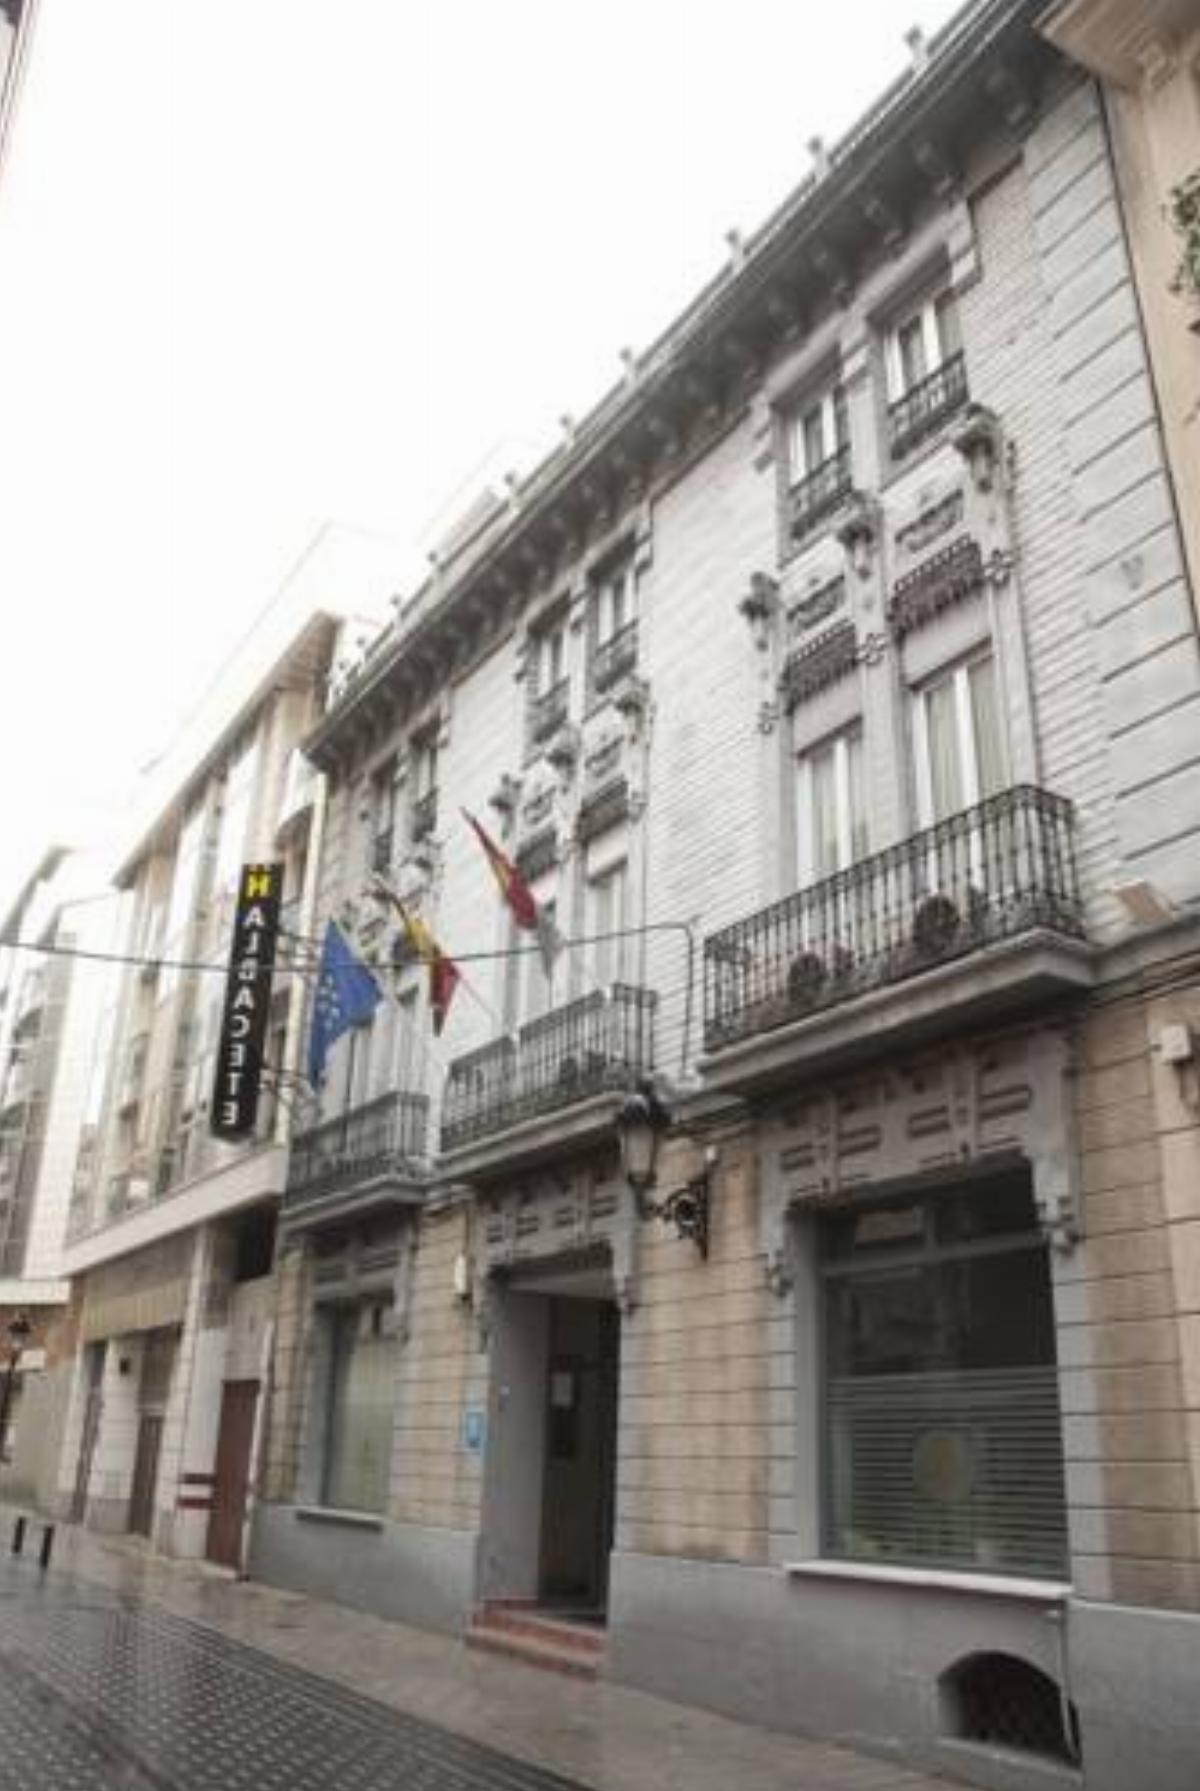 Hotel Albacete Hotel Albacete Spain